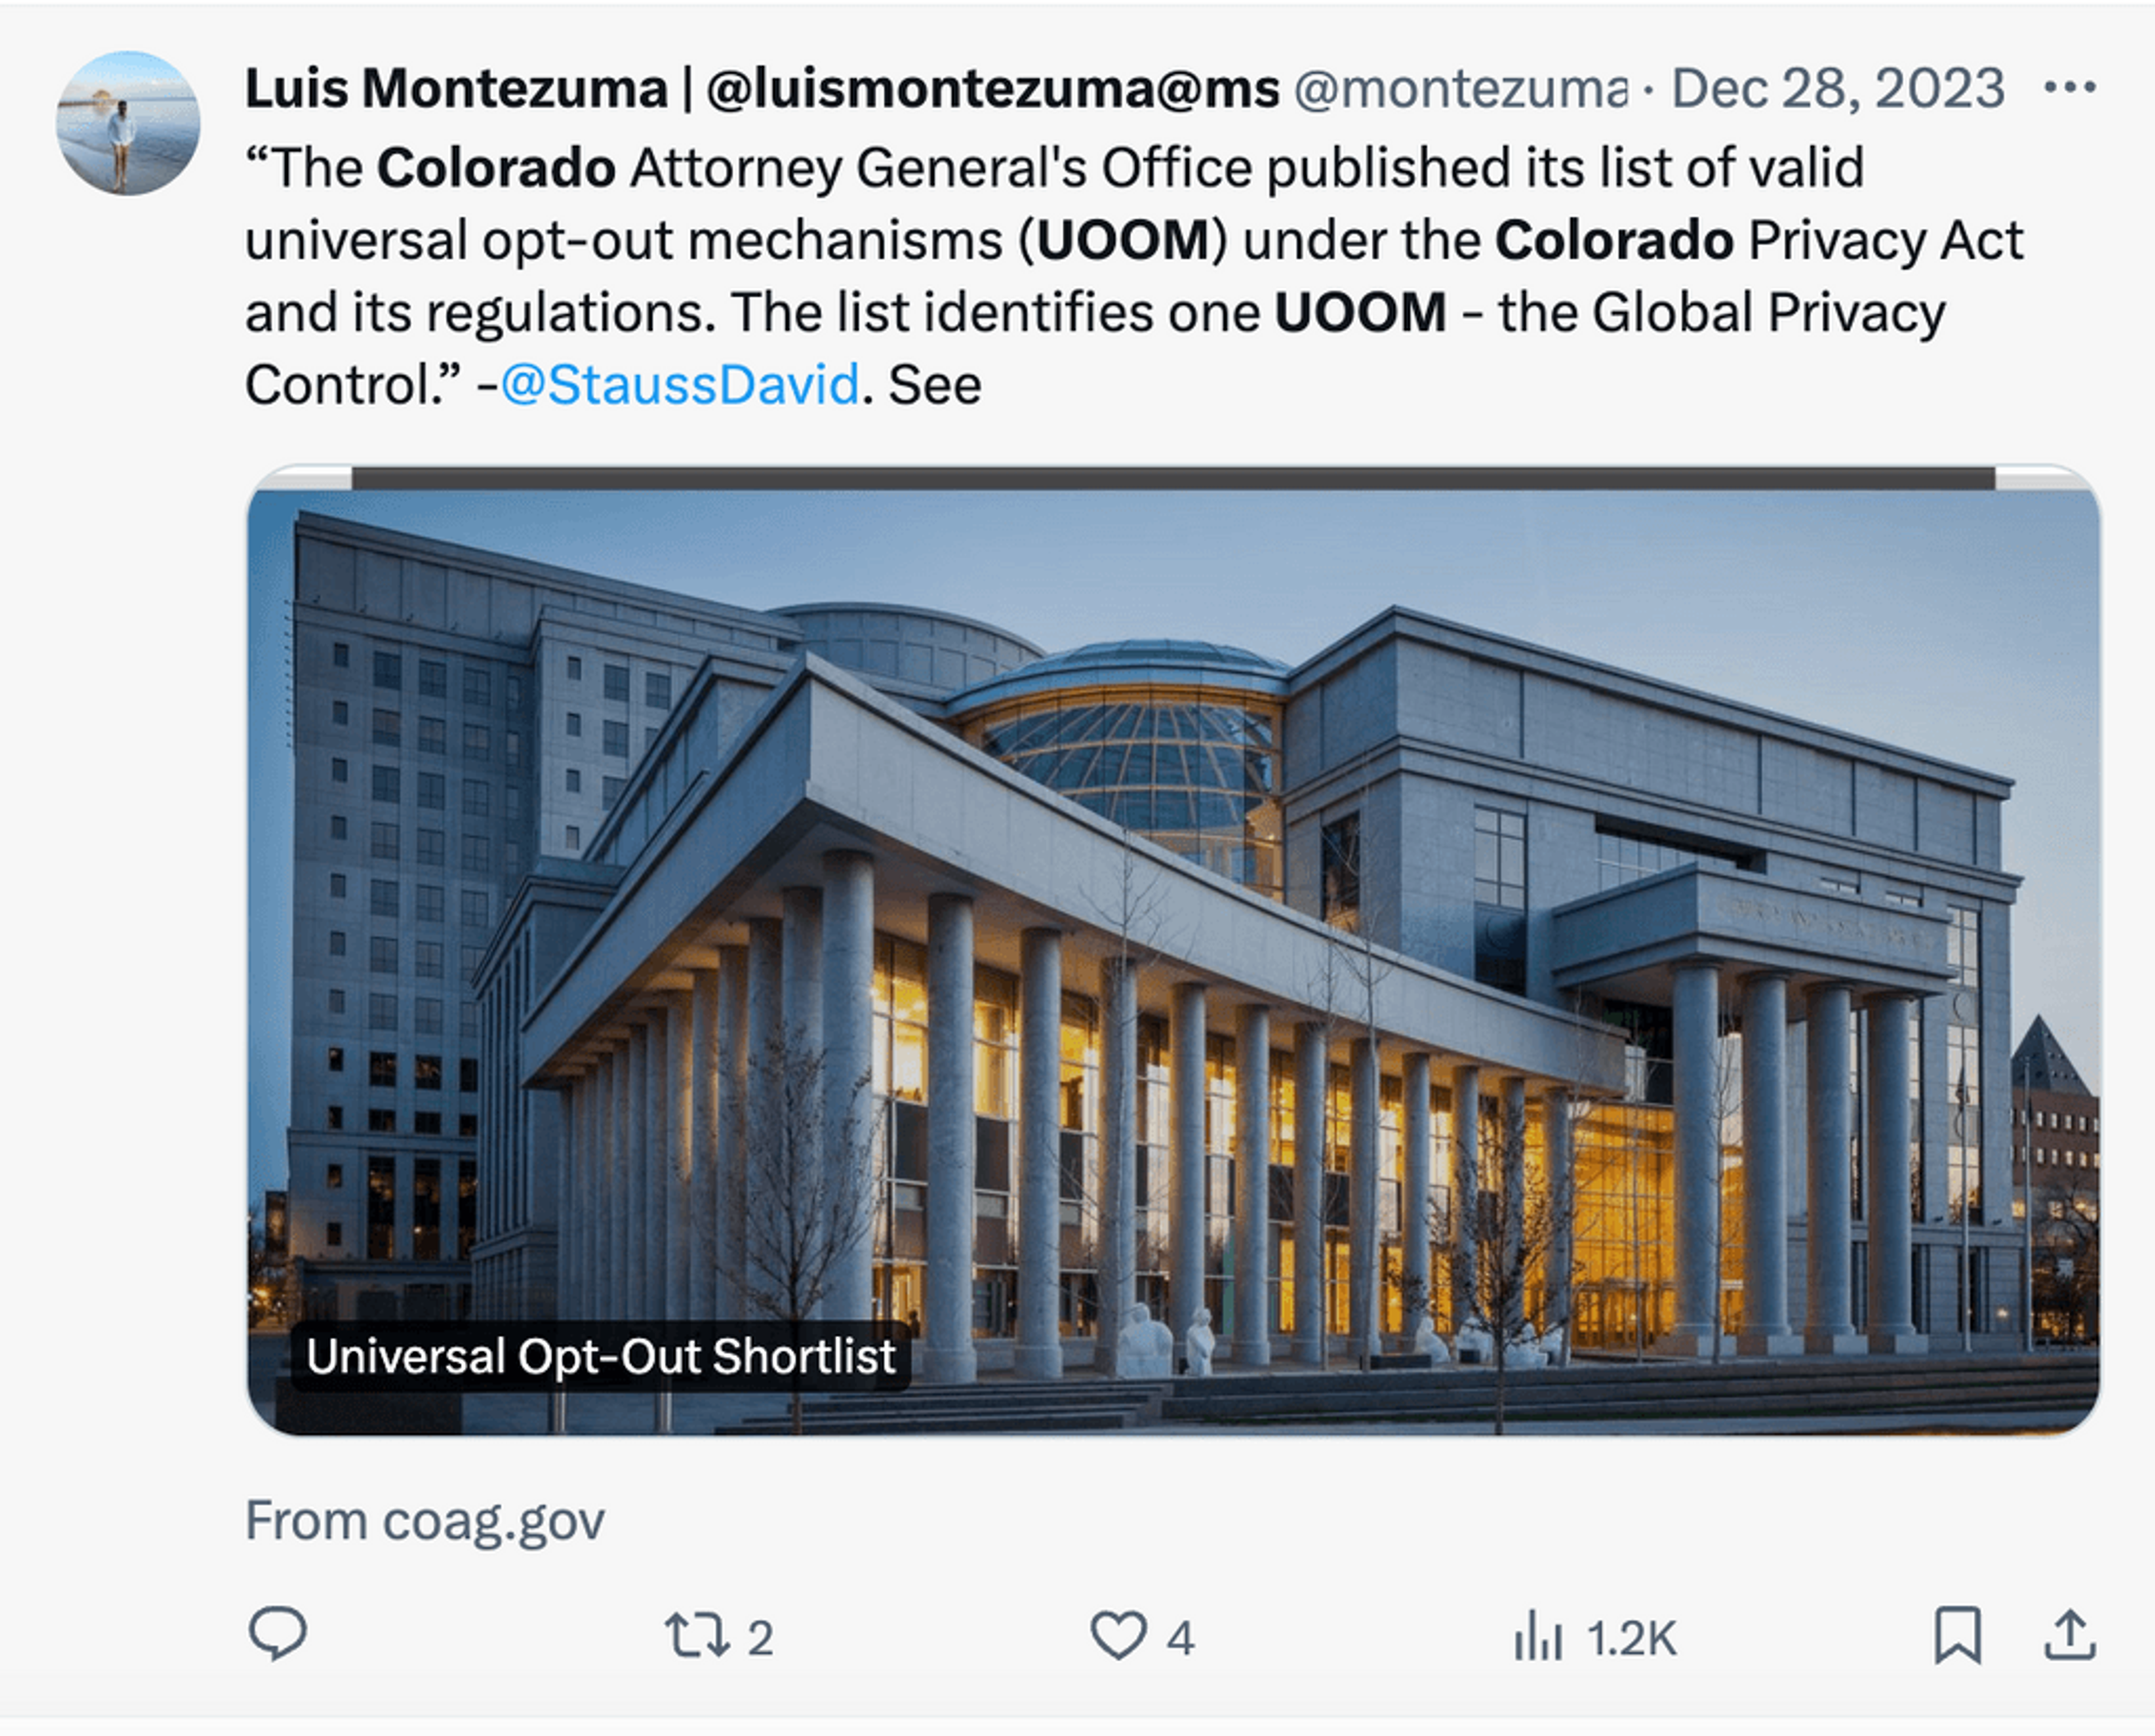 Luis Montezuma tweet